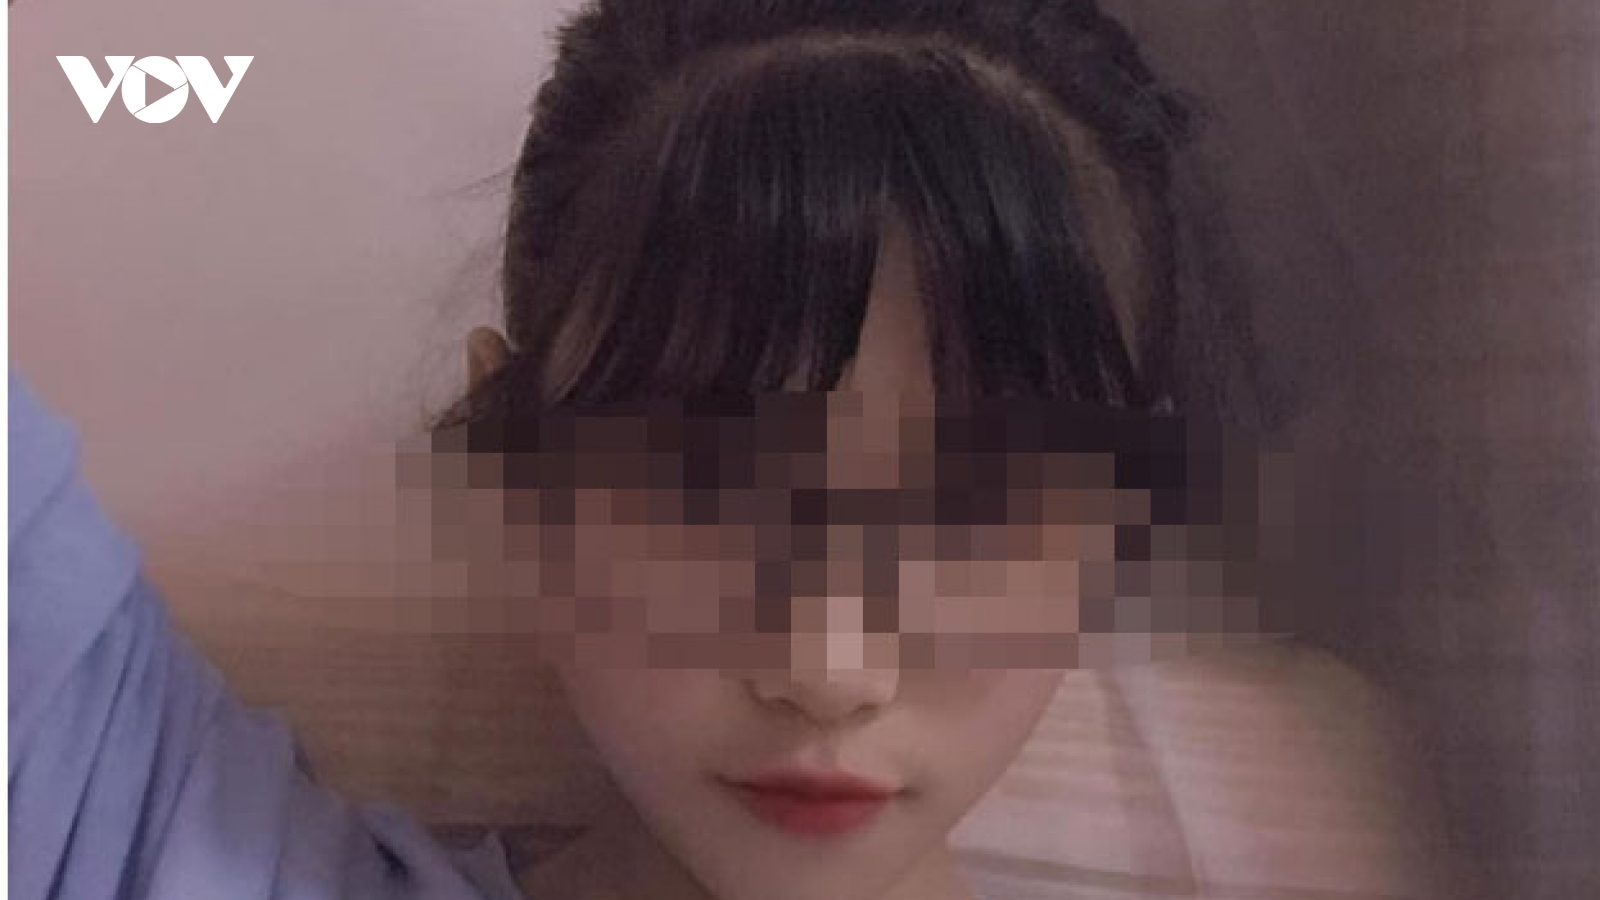 Nữ sinh Sơn La mất tích 10 ngày trước được tìm thấy tại Sóc Sơn, Hà Nội